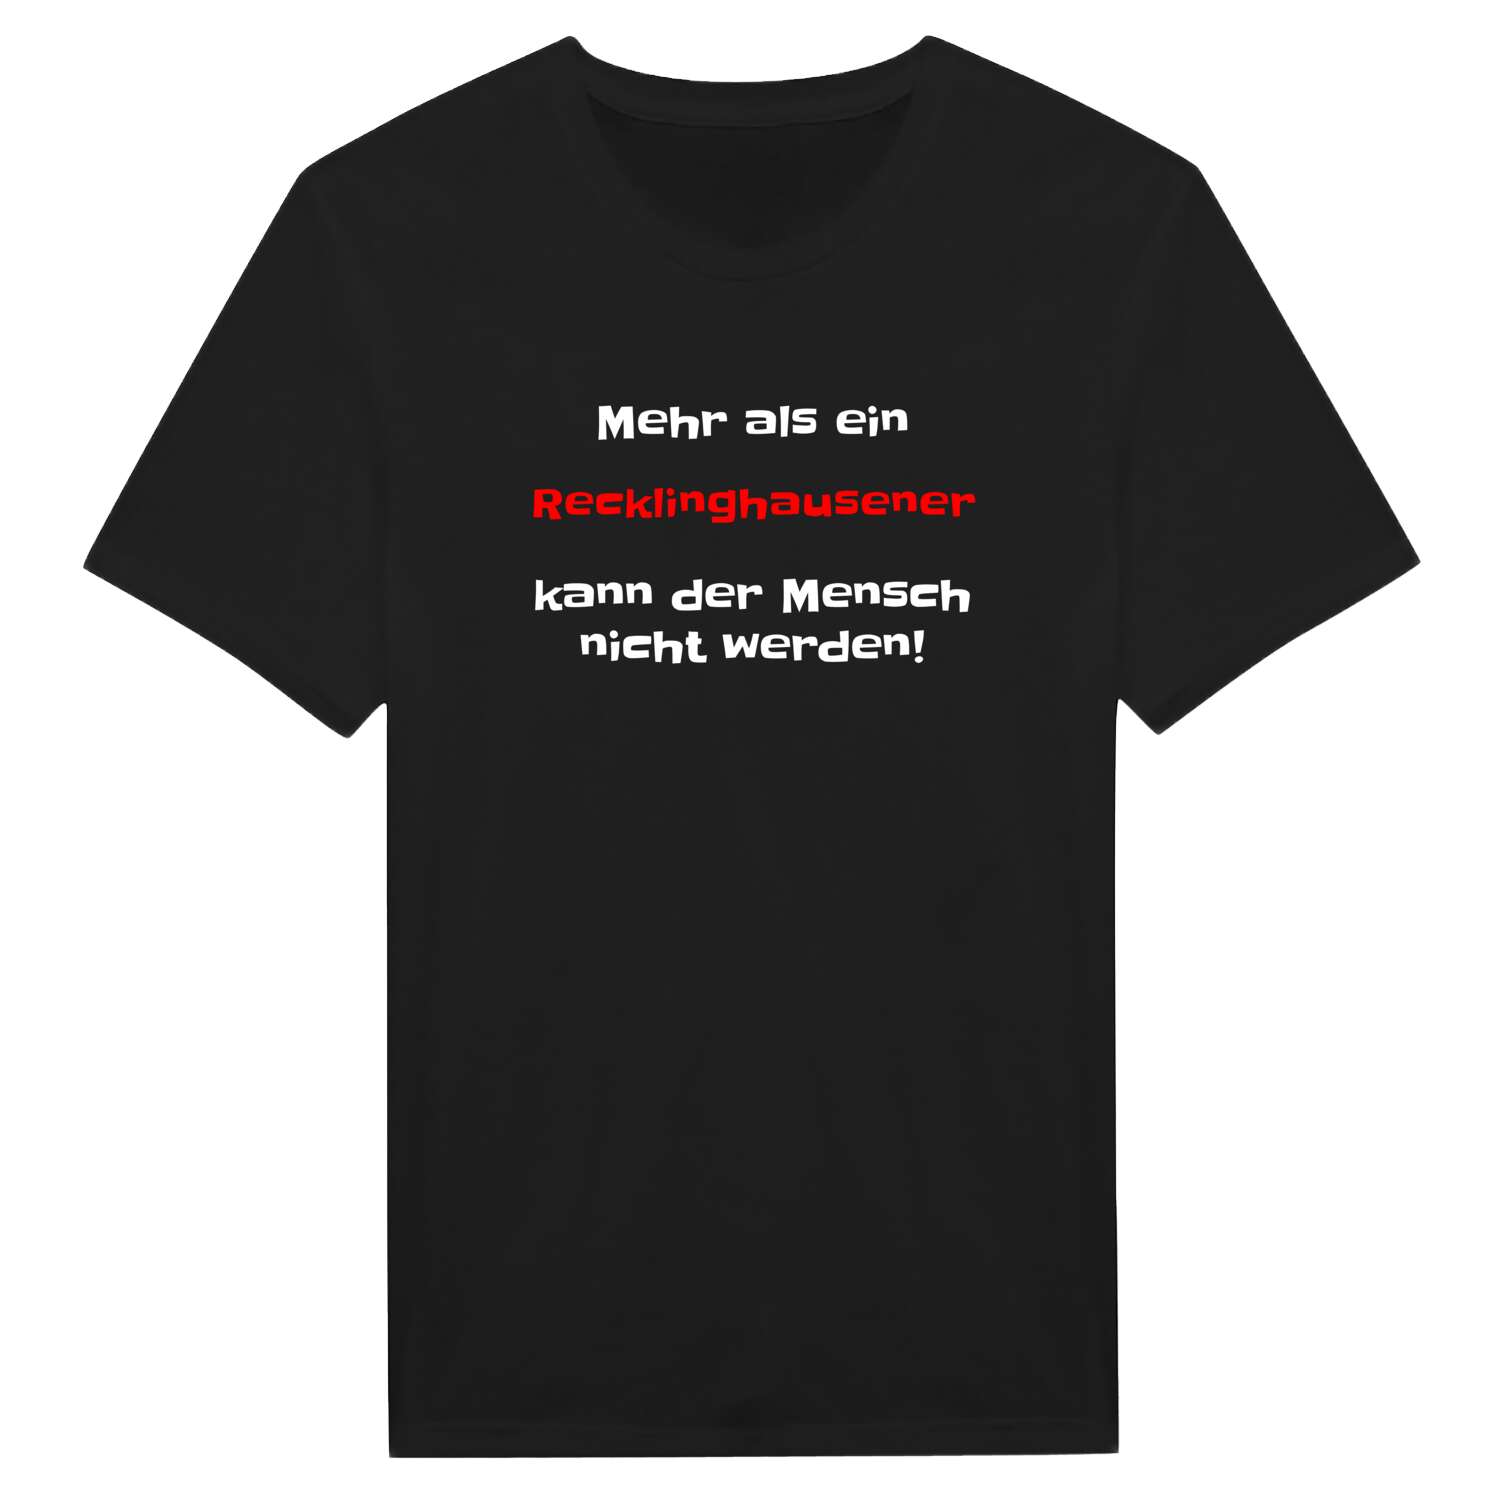 Recklinghausen T-Shirt »Mehr als ein«